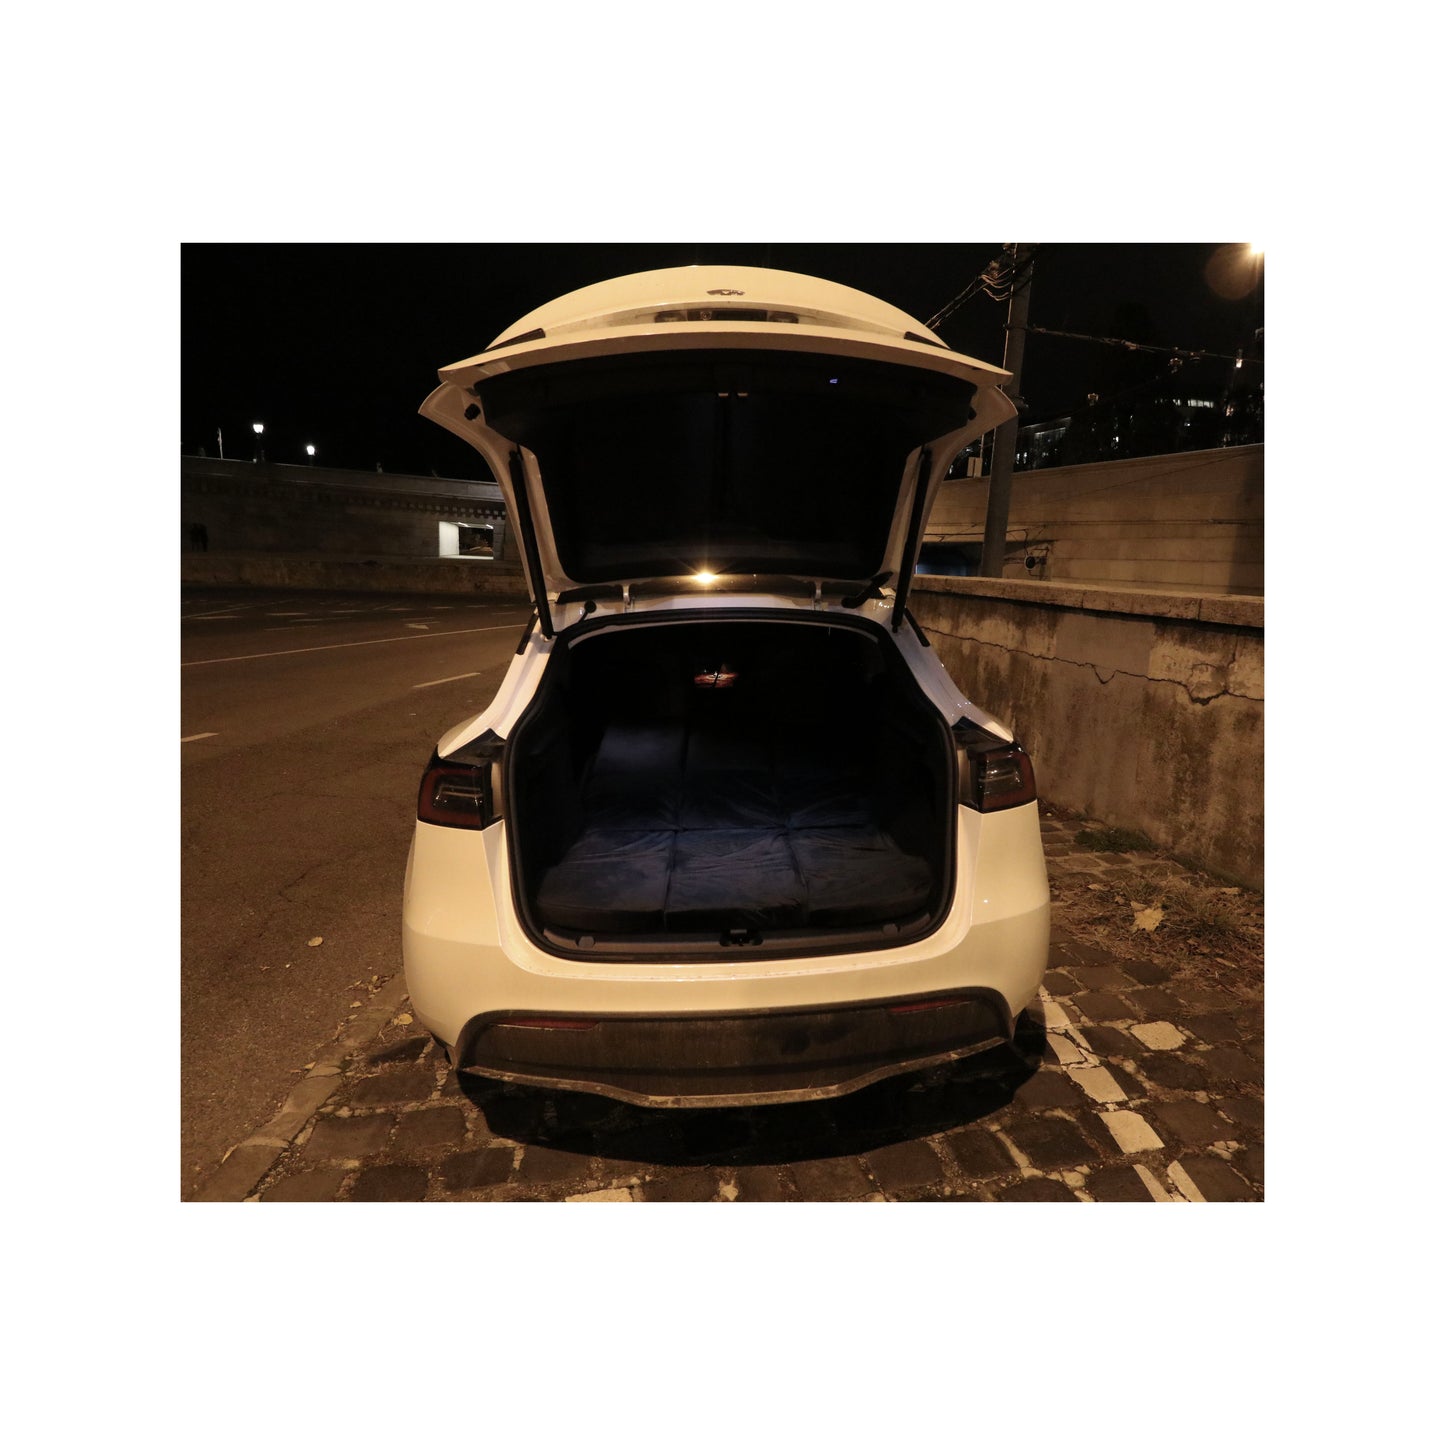 EV-MATS Deluxe CAMP SET Tesla Model 3:lle, jossa Tesla-patja, vedenpitävä laukku takatavaratilaan, satiinilakana, peite, 2 tyynyä päällisineen, 11 sävyä ja 2 vedenpitävää laukkua Model 3 etutavaratilaan